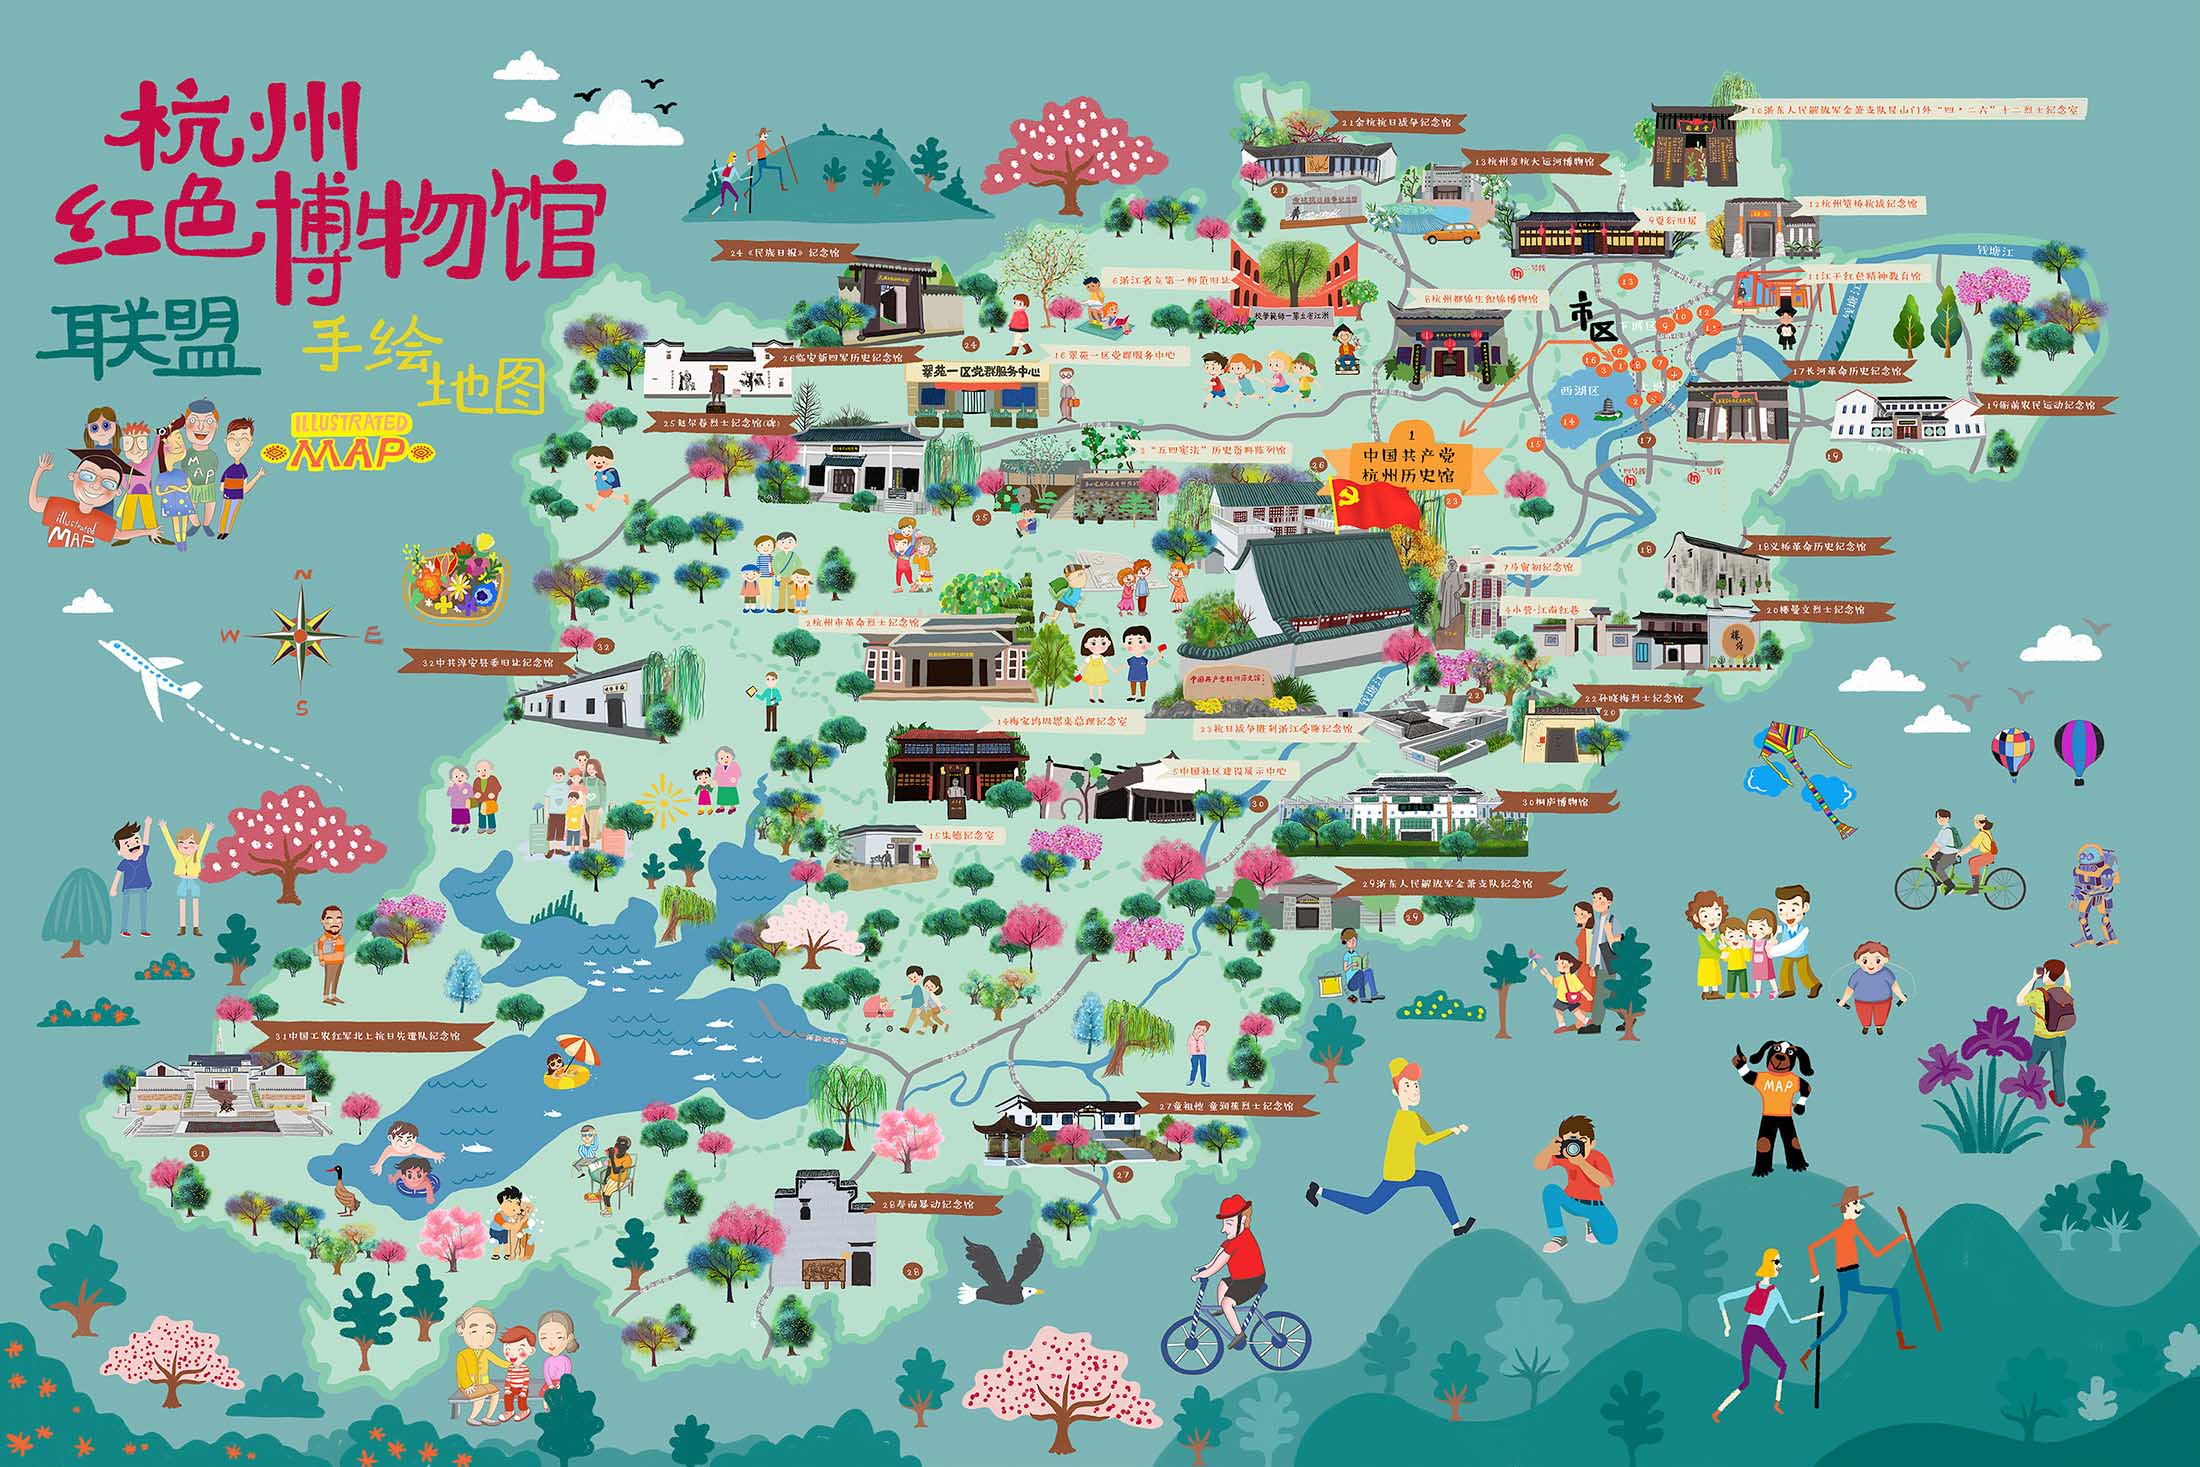 松山湖管委会手绘地图与科技的完美结合 